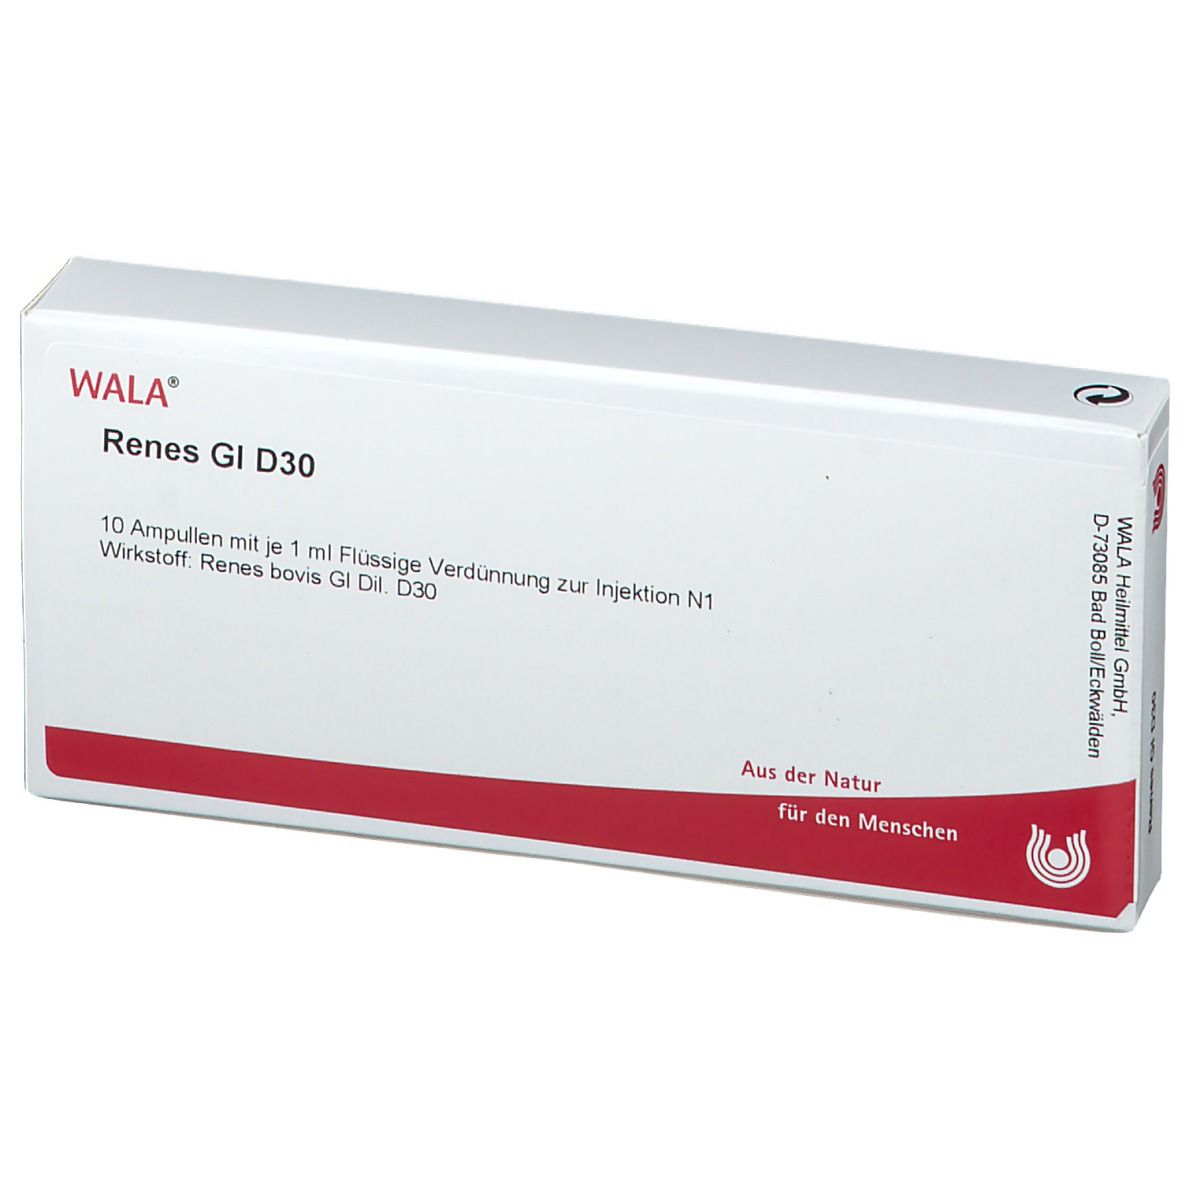 WALA® Renes Gl D 30